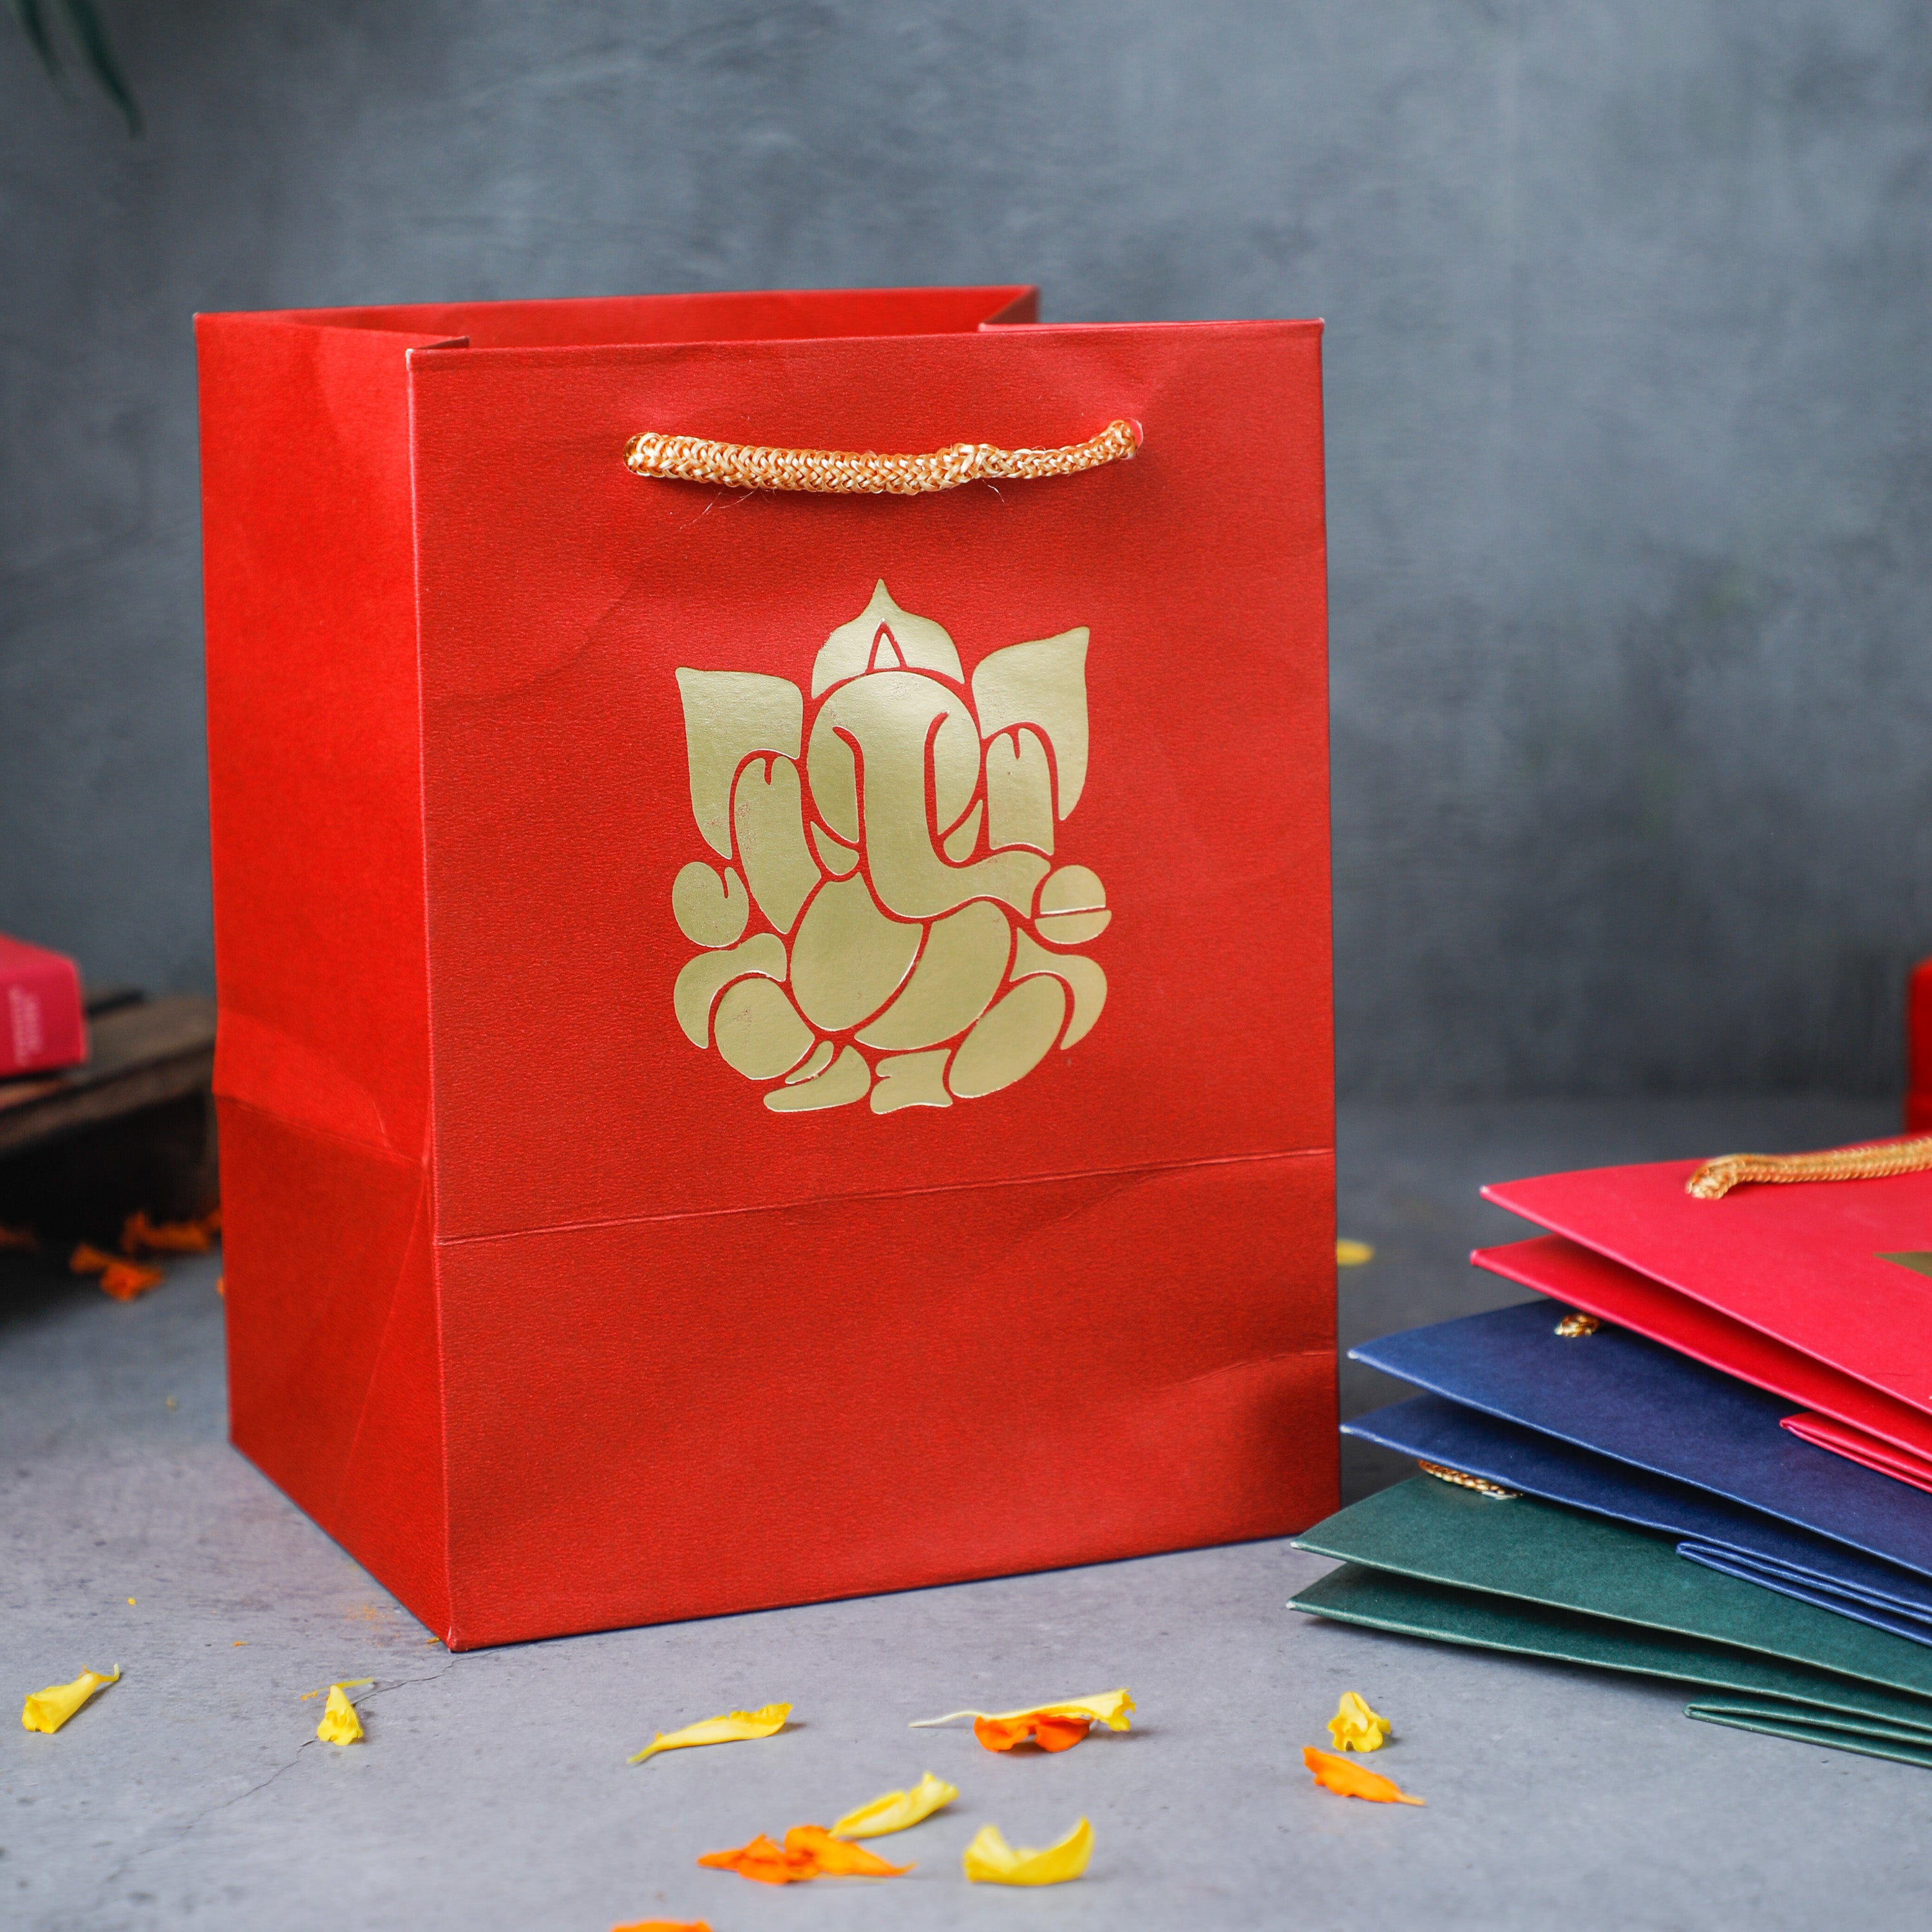 Ganesha printed paper bags